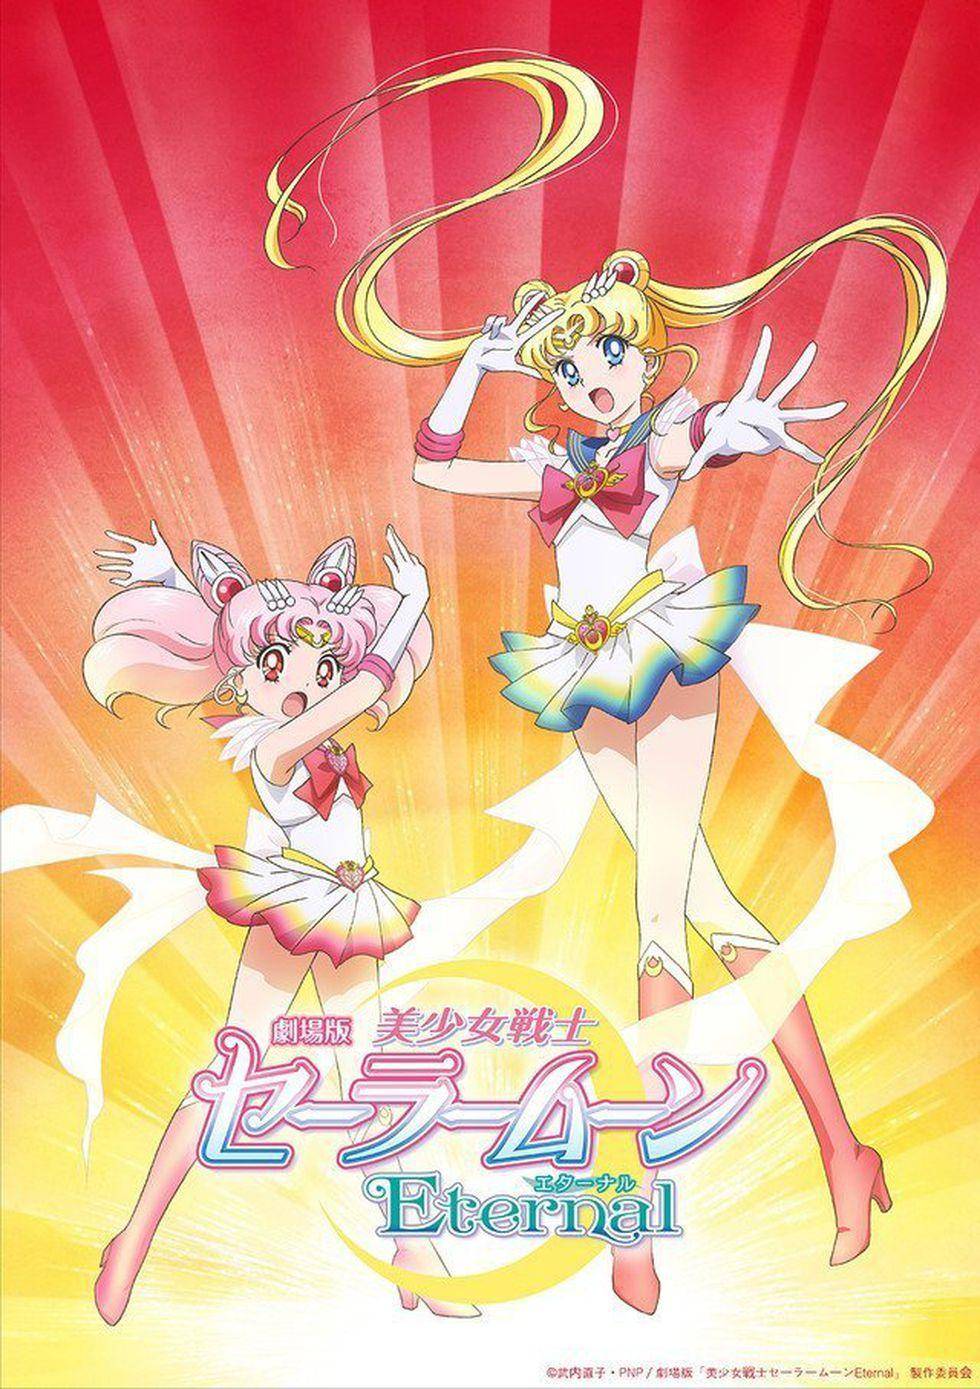 Se pospone el estreno de Sailor Moon Eternal por el Covid 19 1